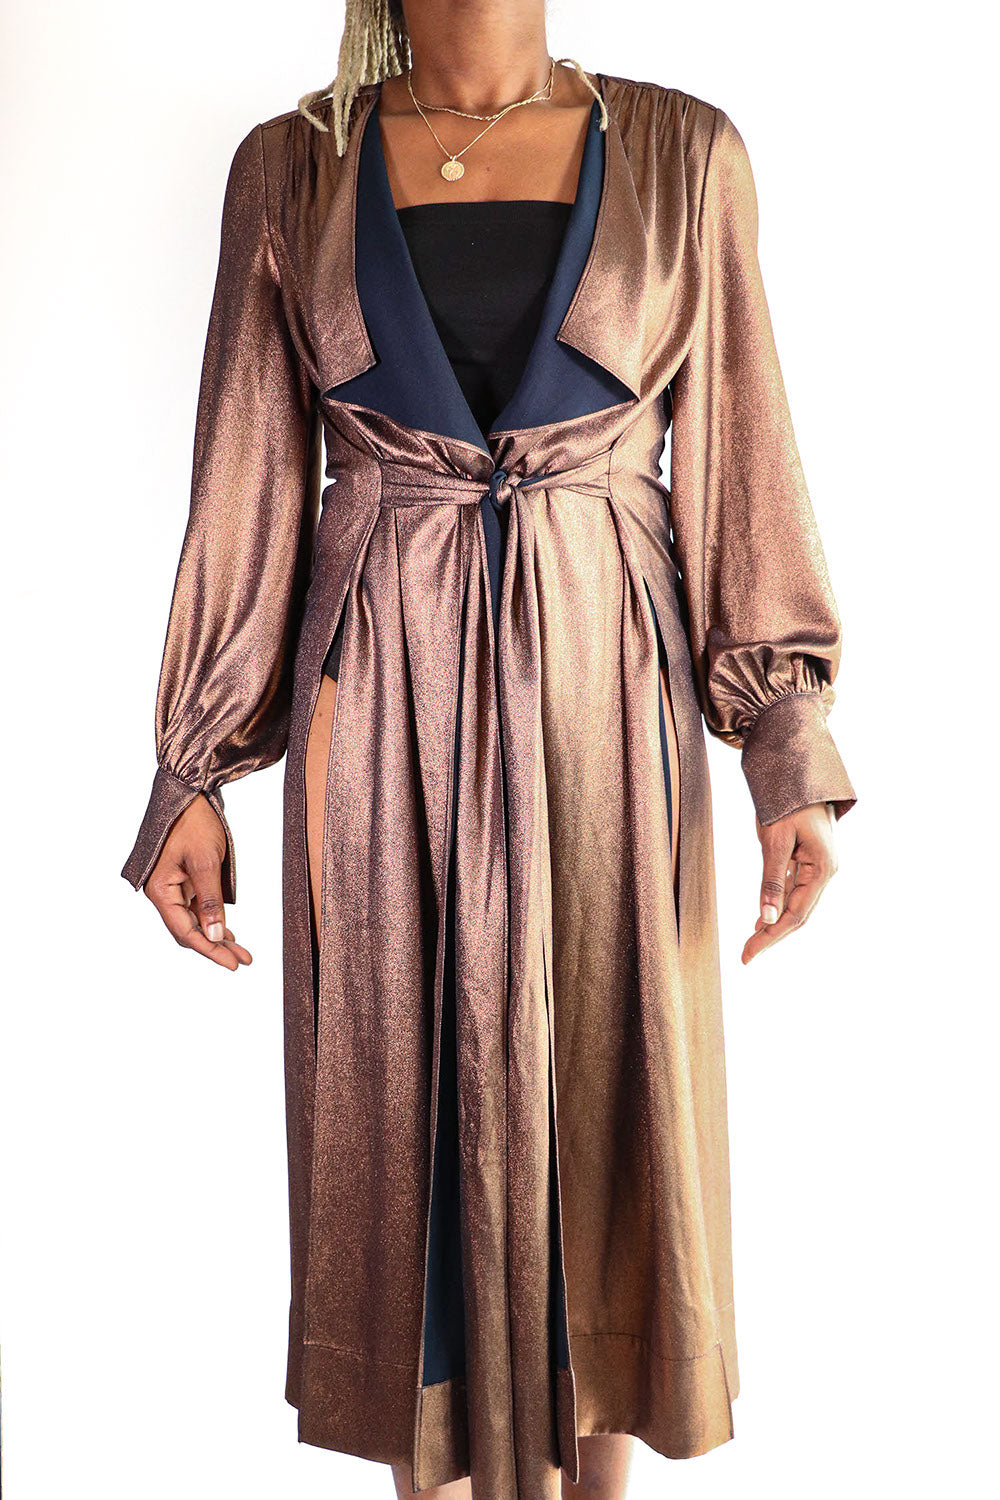 BCBGMAXAZRIA - Bronze Wrap Dress - S ...